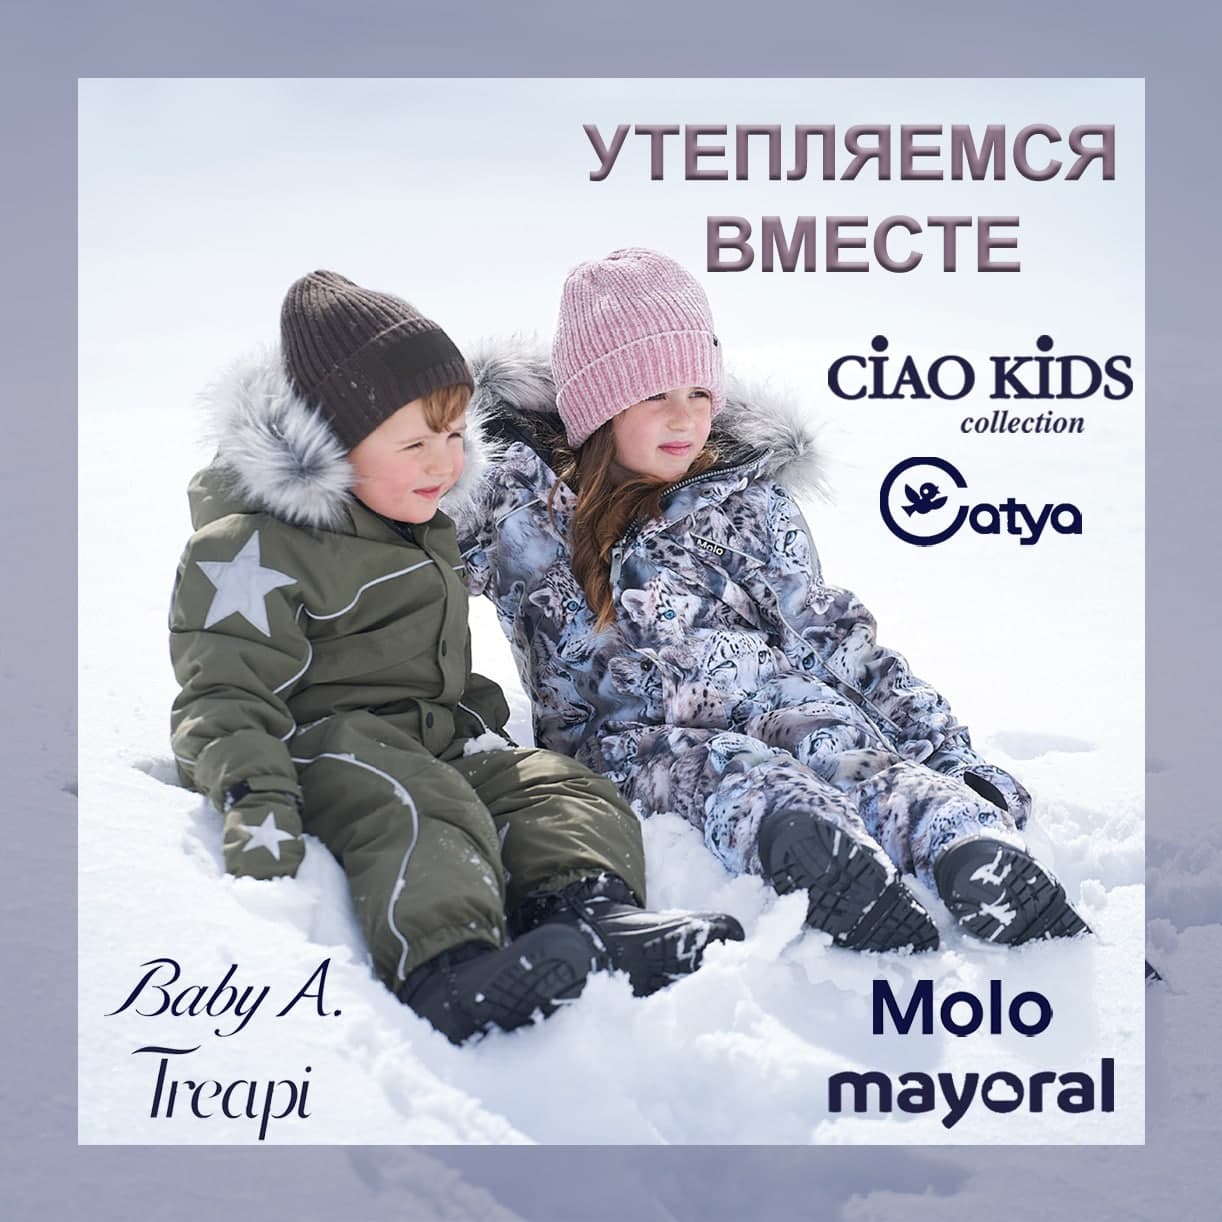 Детская Одежда Зима Распродажа Интернет Магазин